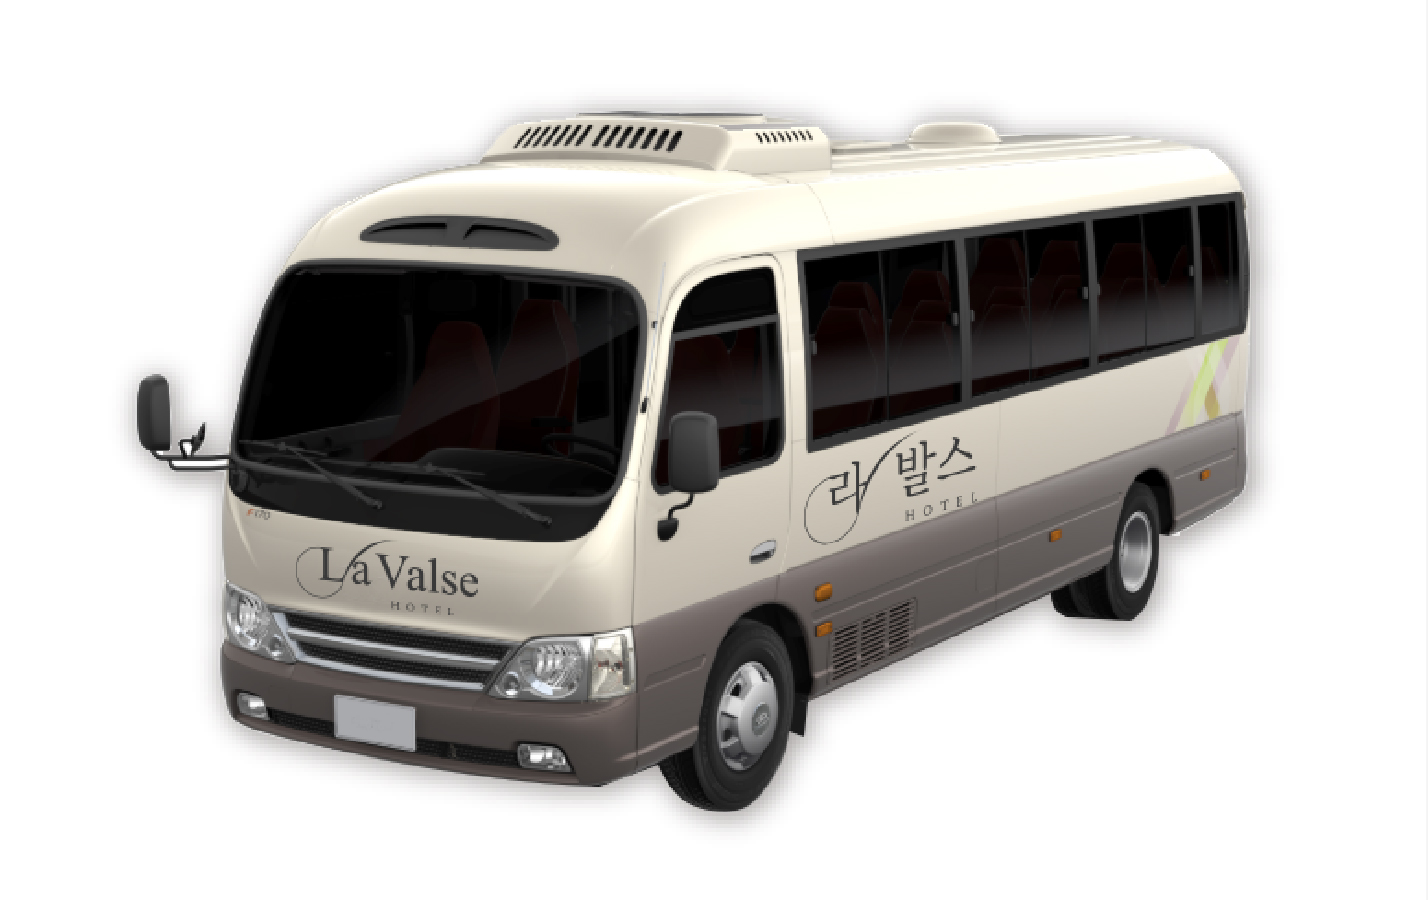 부산 라발스호텔 셔틀버스 무료 이용